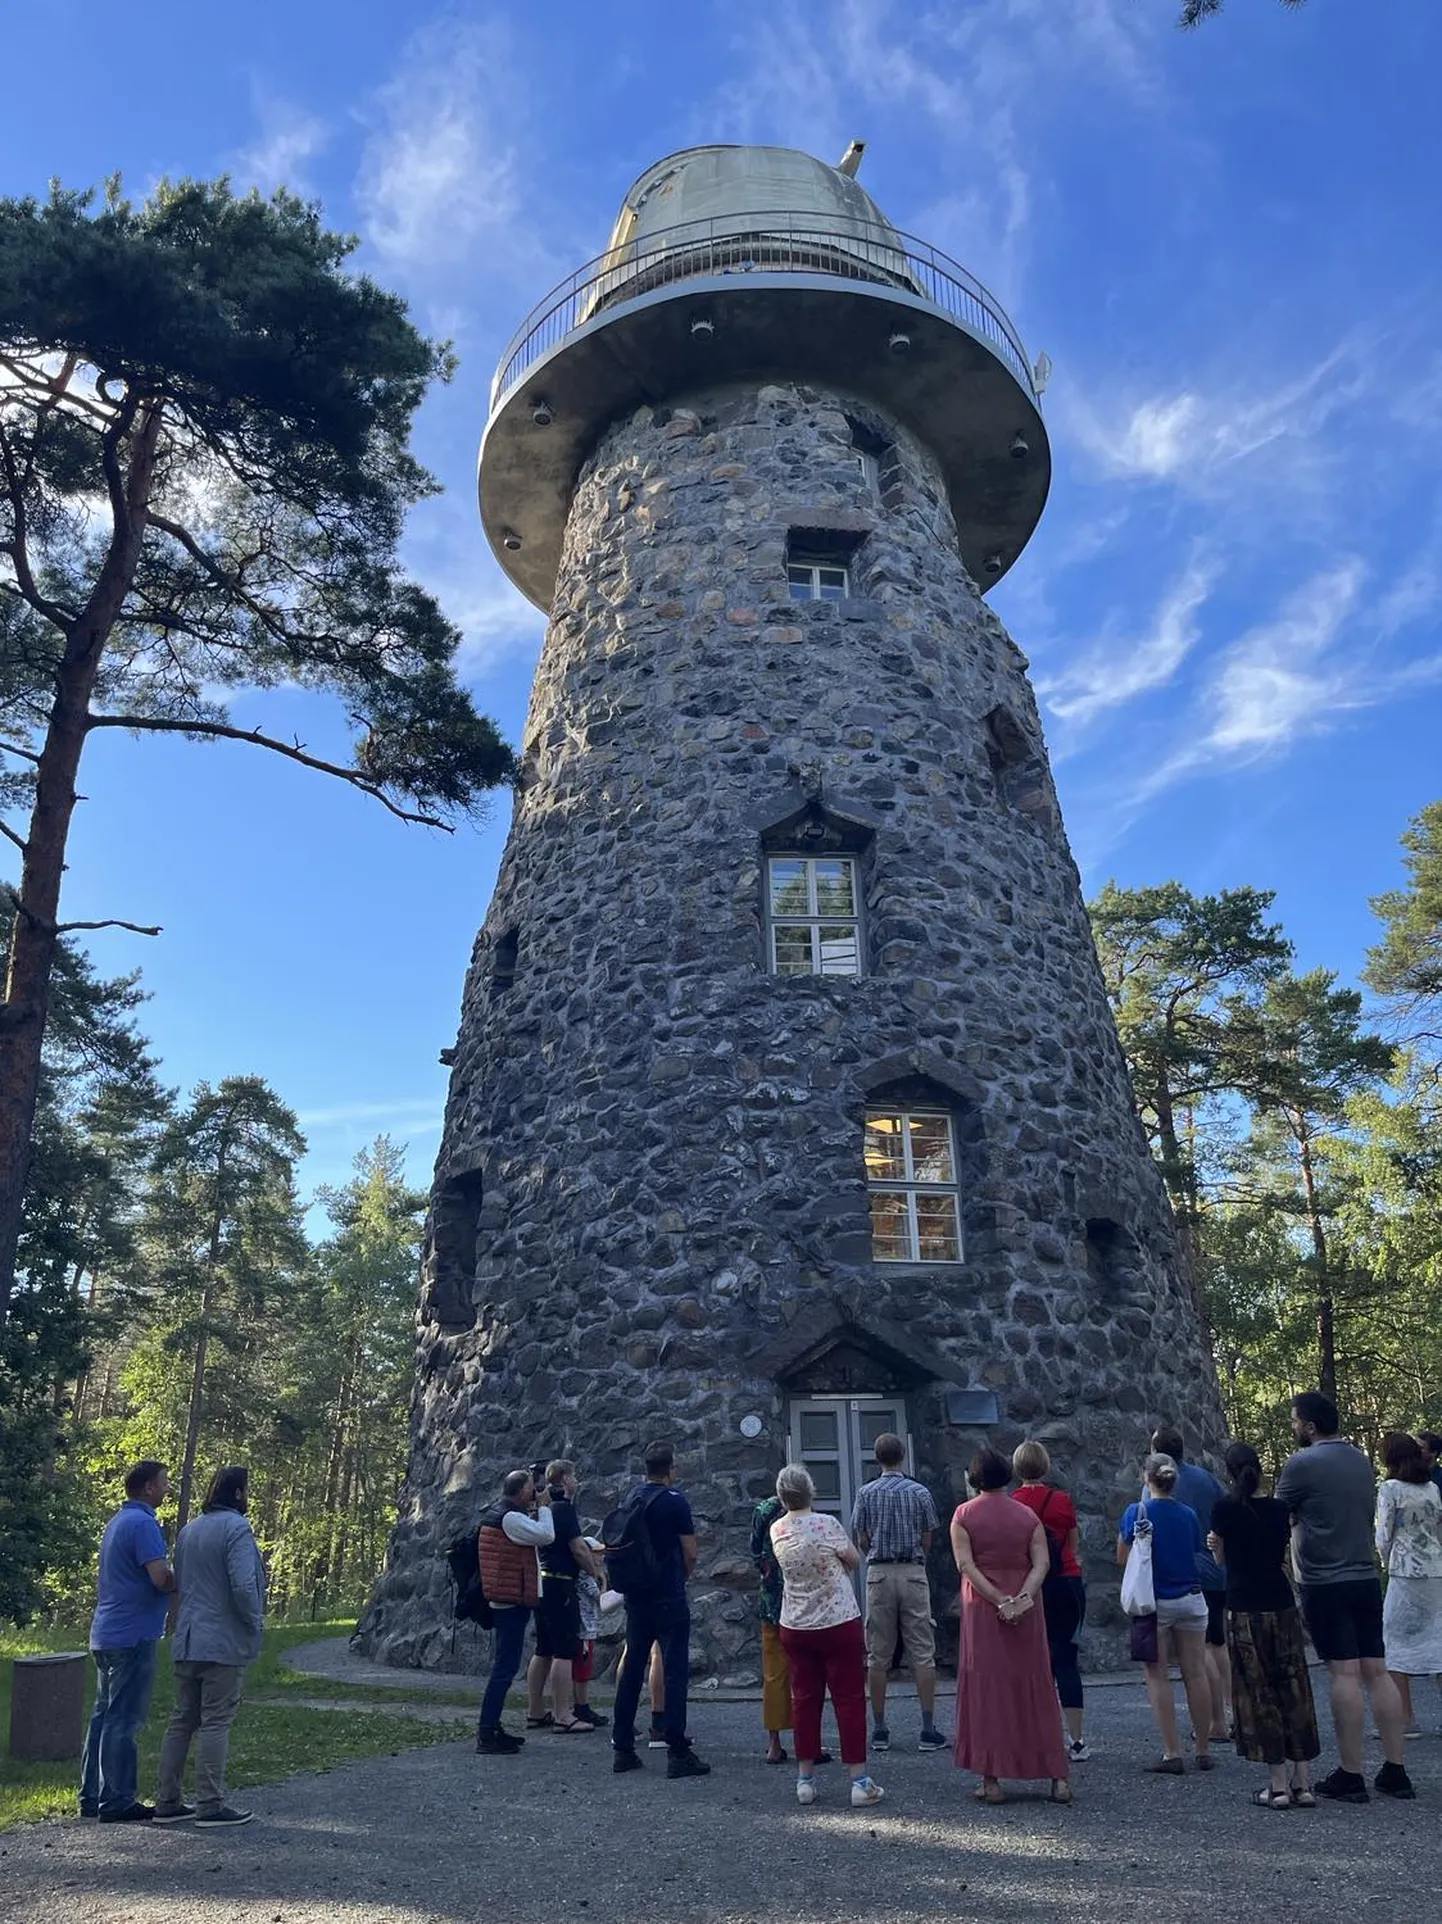 Первое мероприятие в рамках серии «Открой для себя Нымме» прошло в Таллиннской обсерватории в парке Глена.